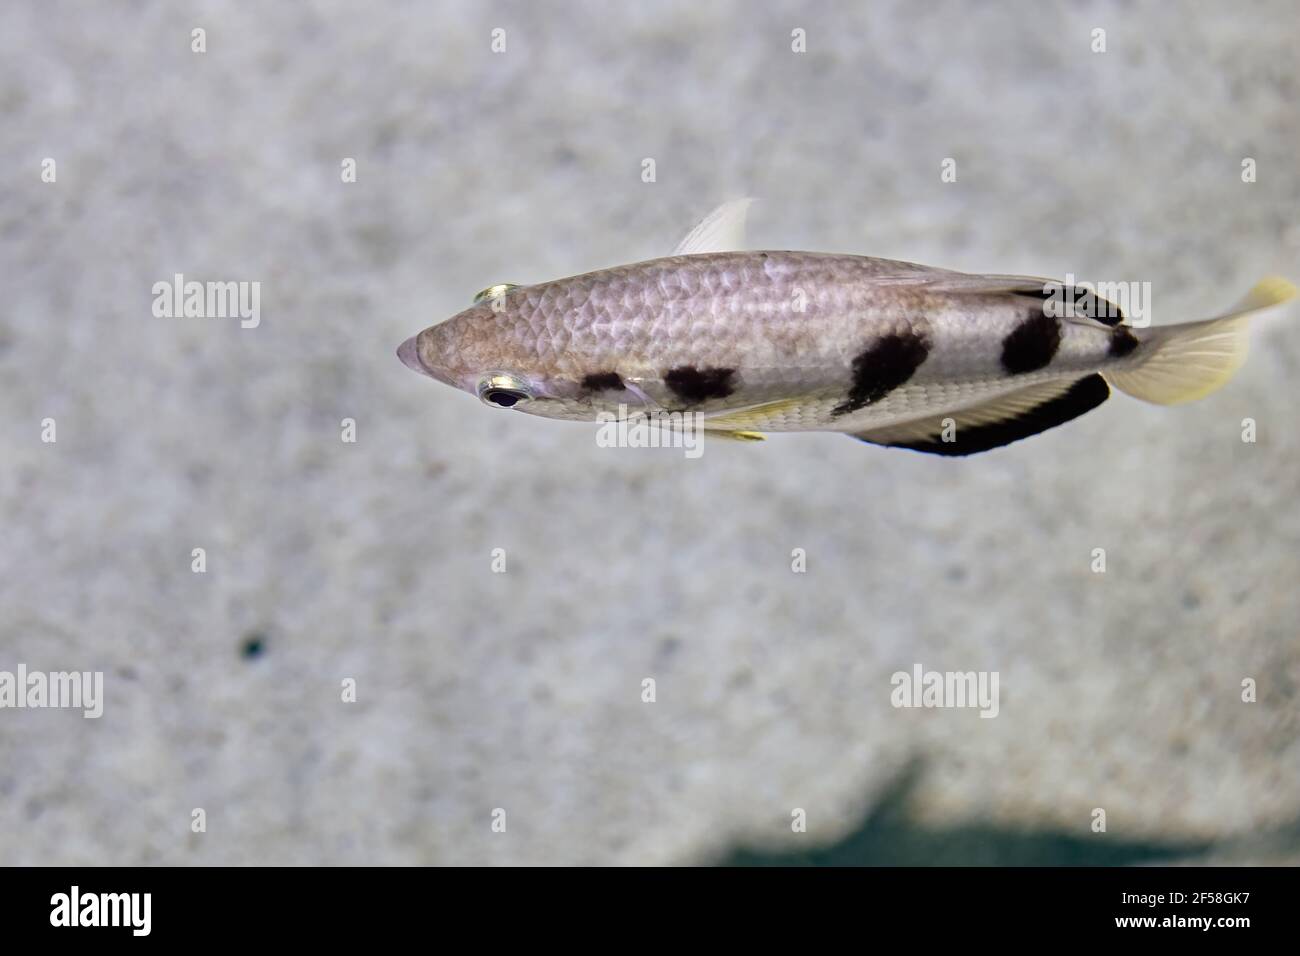 Les Toxotes jaculatrix ou archerfish badé sont de couleur argentée de poissons perciformes d'eau saumâtre et ont une nageoire dorsale vers l'extrémité postérieure Banque D'Images